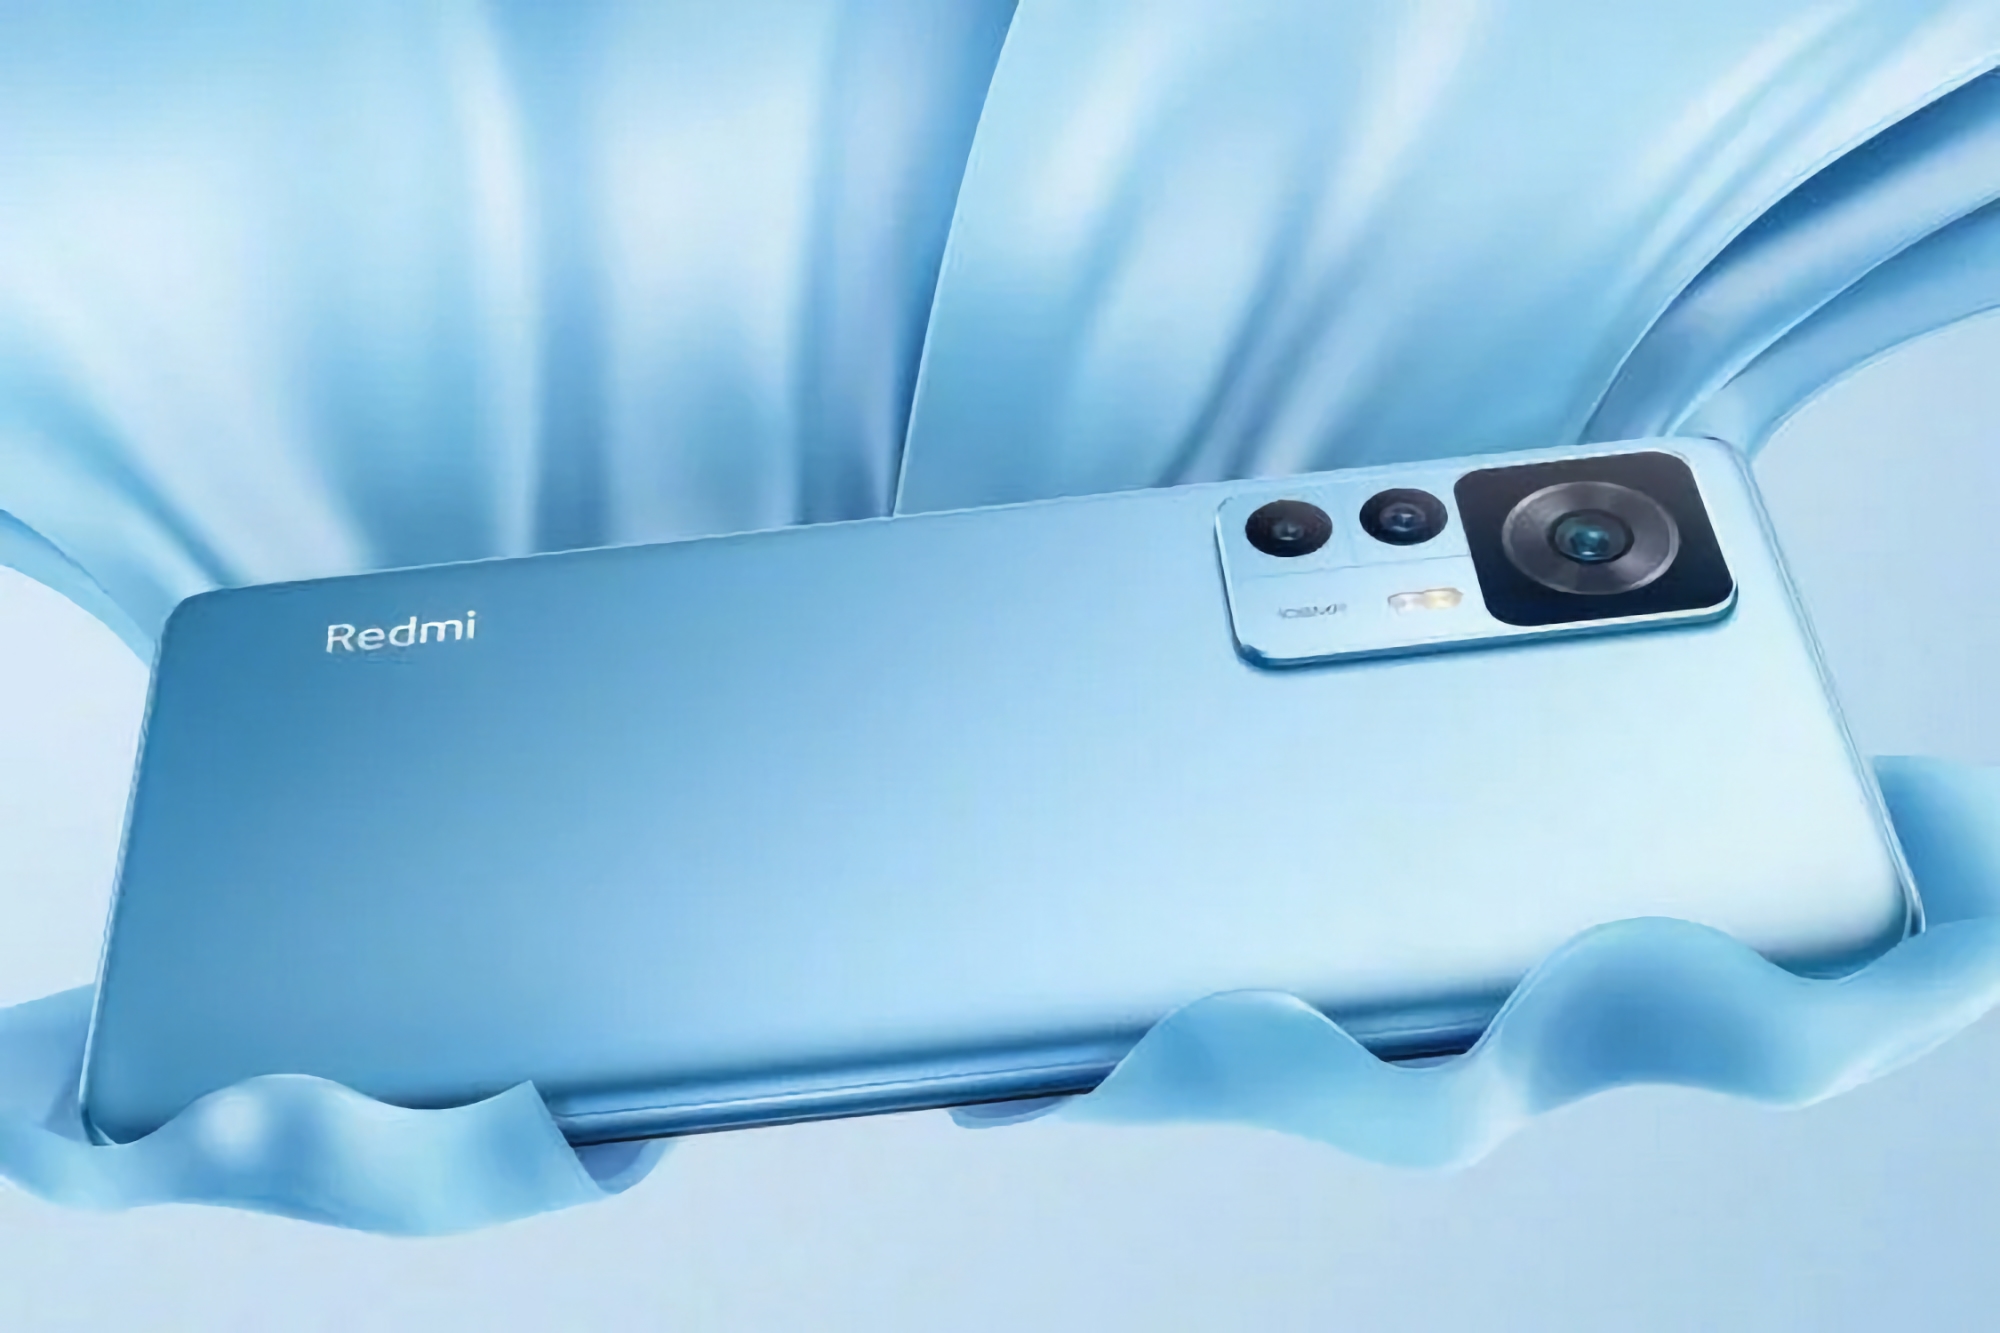 Rumeur : Xiaomi travaille sur un smartphone phare, le Redmi K60 Ultra, qui sera lancé au troisième trimestre de cette année.